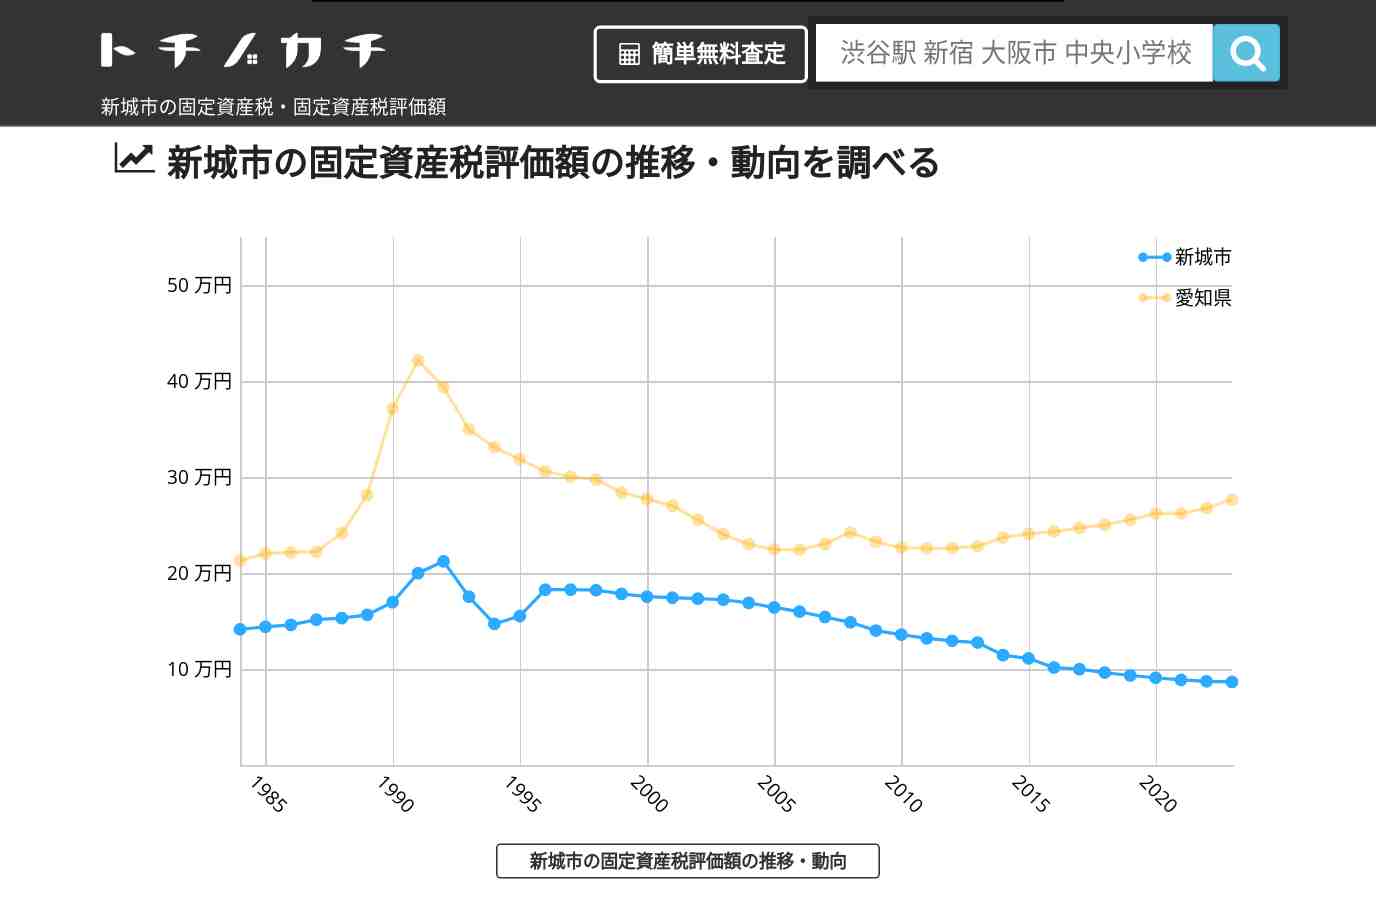 東陽小学校(愛知県 新城市)周辺の固定資産税・固定資産税評価額 | トチノカチ